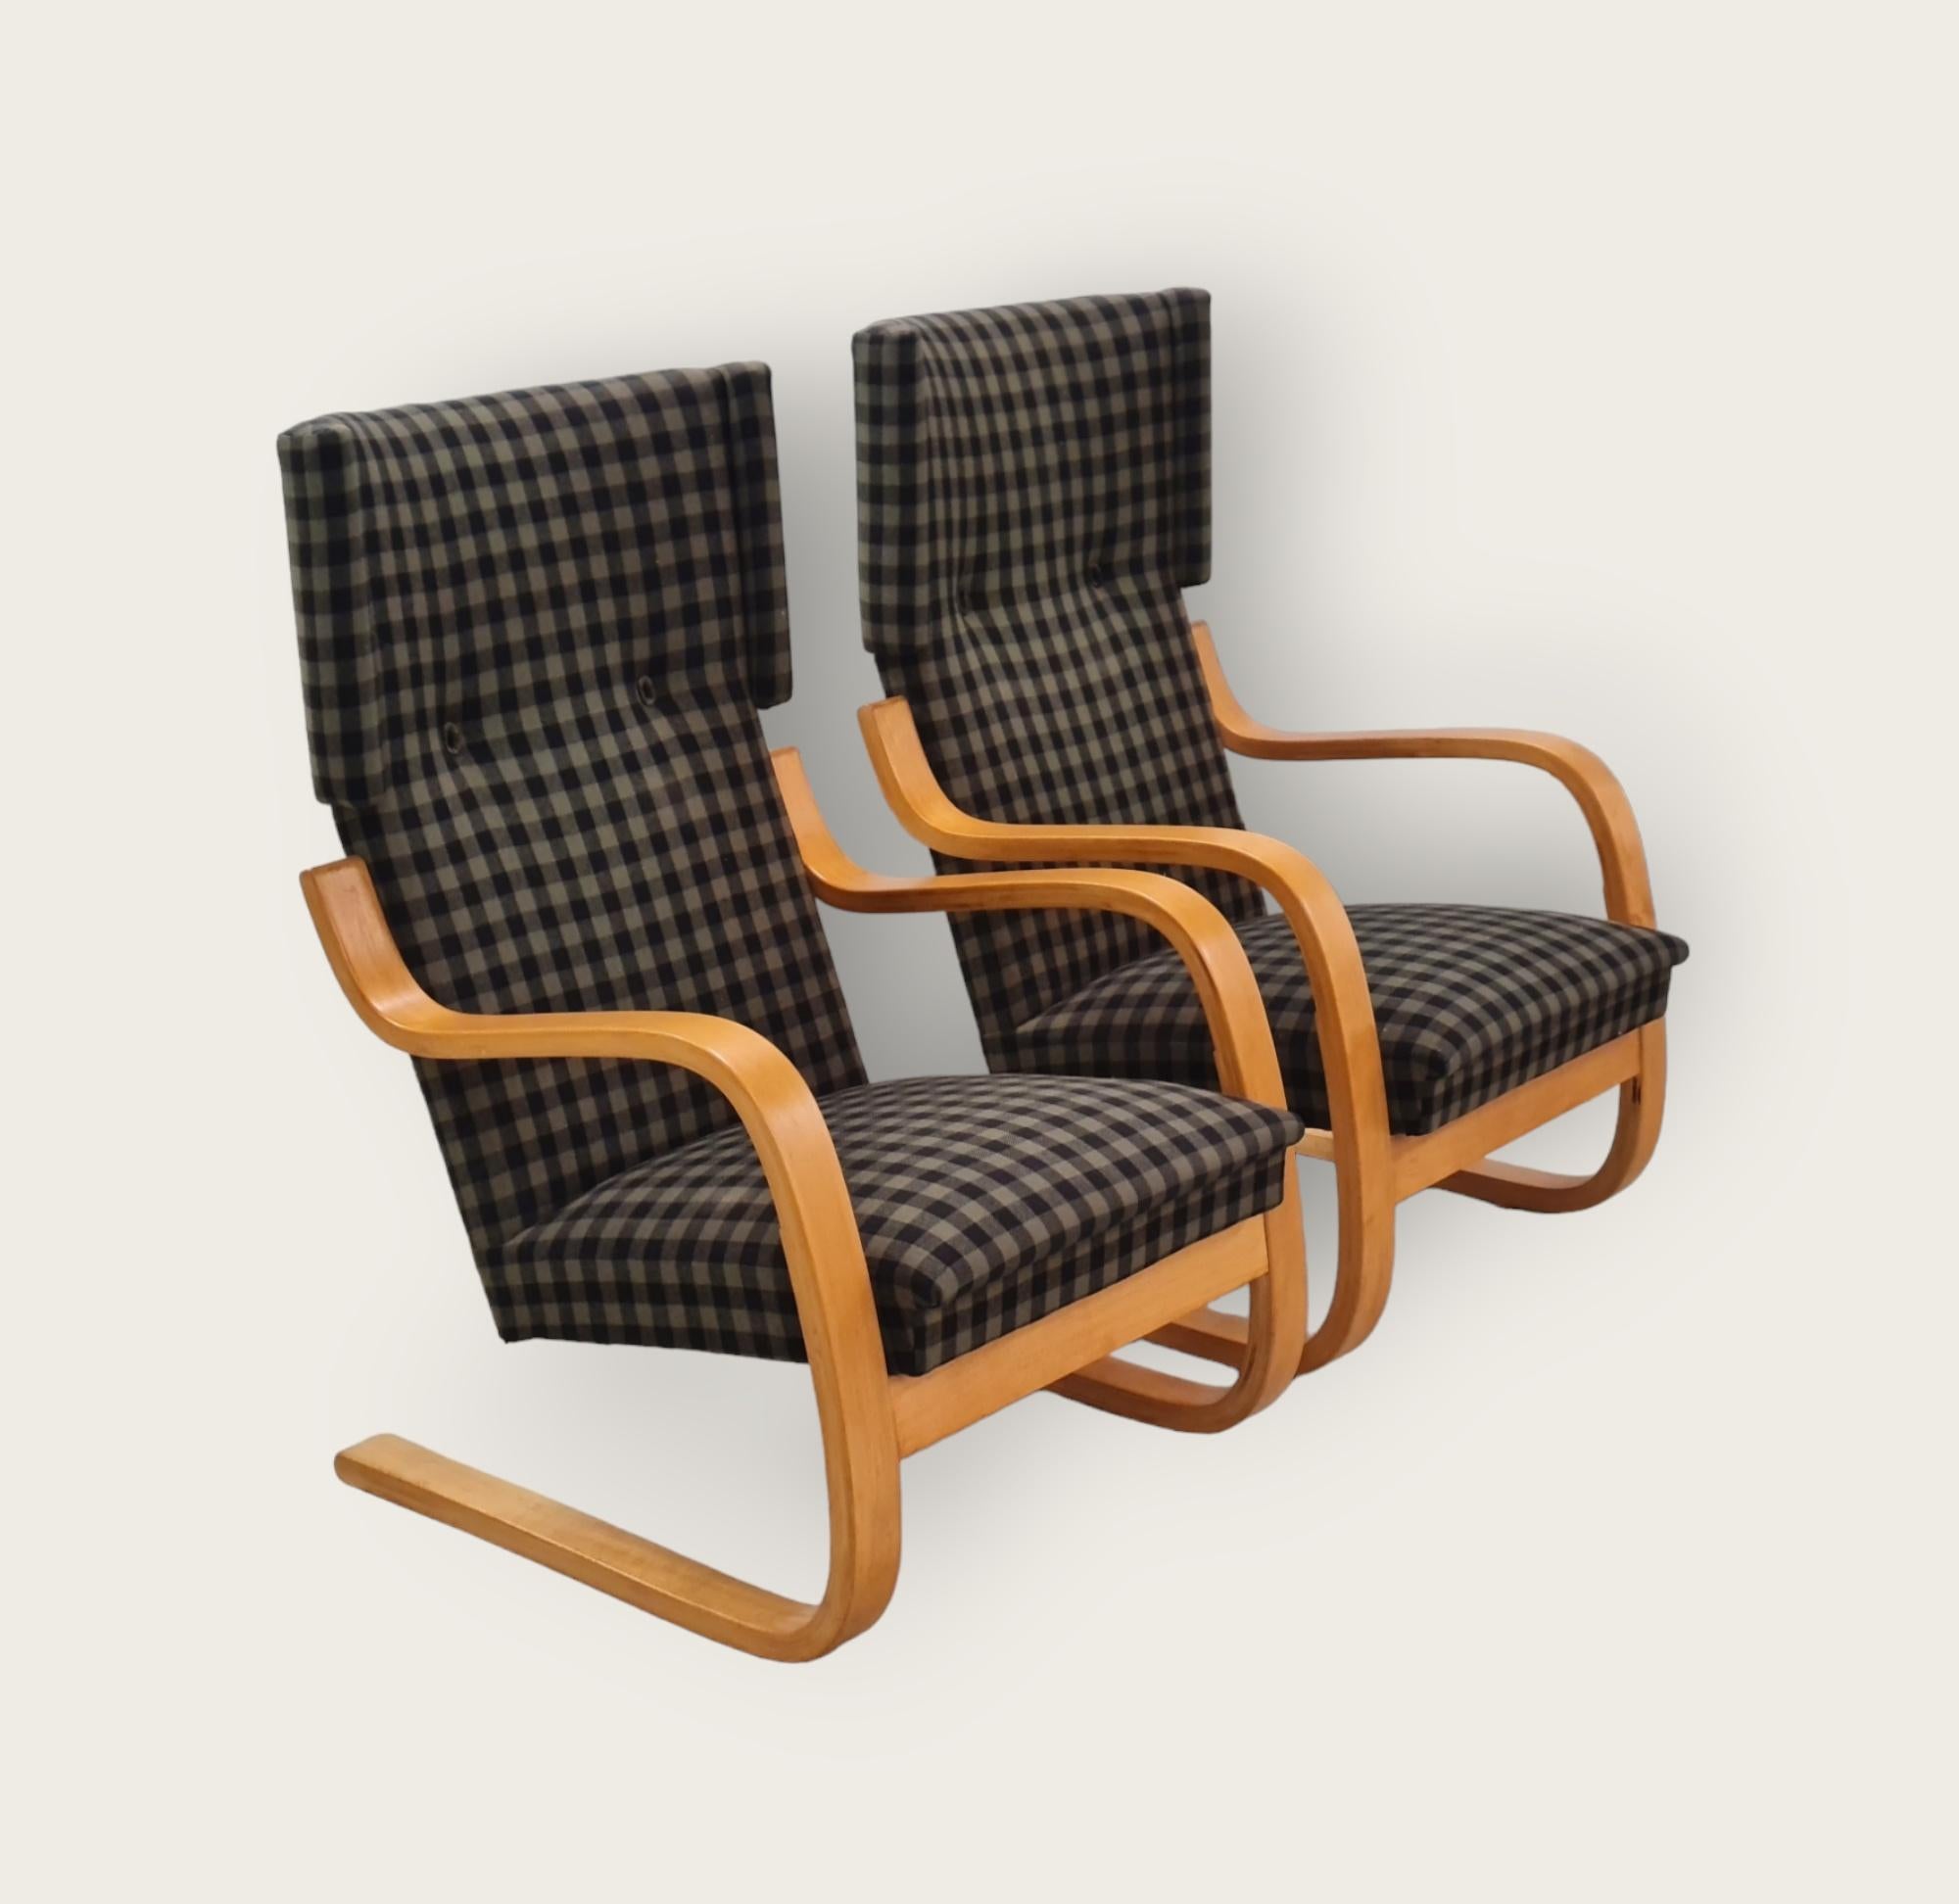 Magnifique paire de chaises à ressort Alvar Aalto du milieu du siècle, modèle 401. Cette chaise est similaire à la chaise emblématique connue sous le nom de Pikkupaimio (petit paimio), mais avec un dossier plus haut et des 